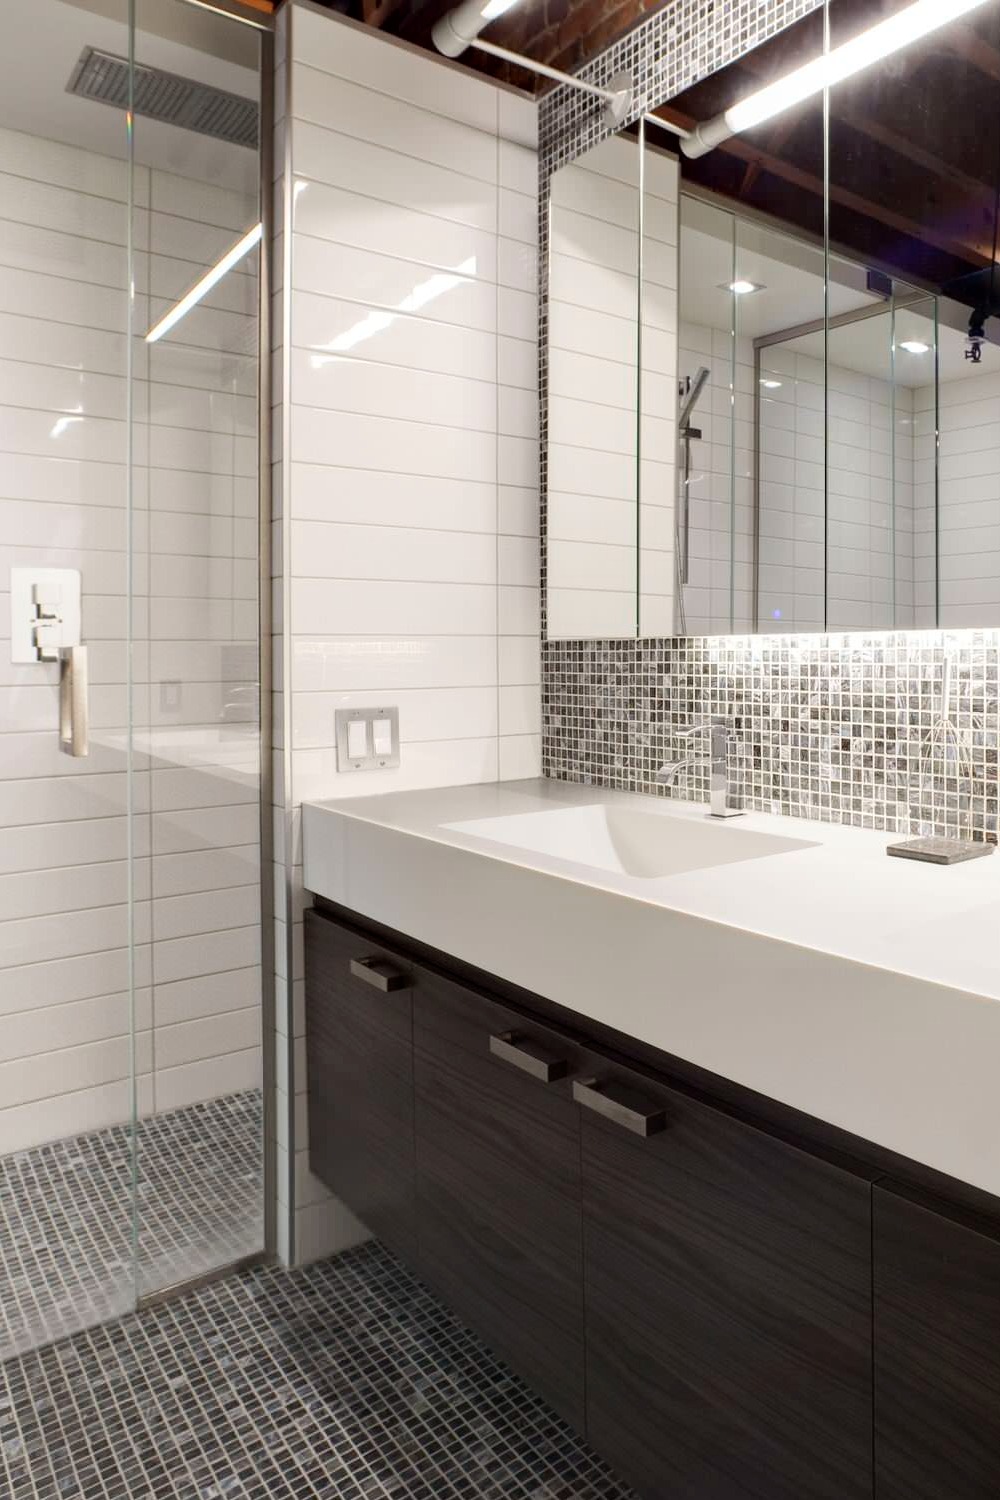 Bathroom Backsplash Ideas Mosaic Tiles Vanity Modern Wall Wood Marble Sink Stone Behind